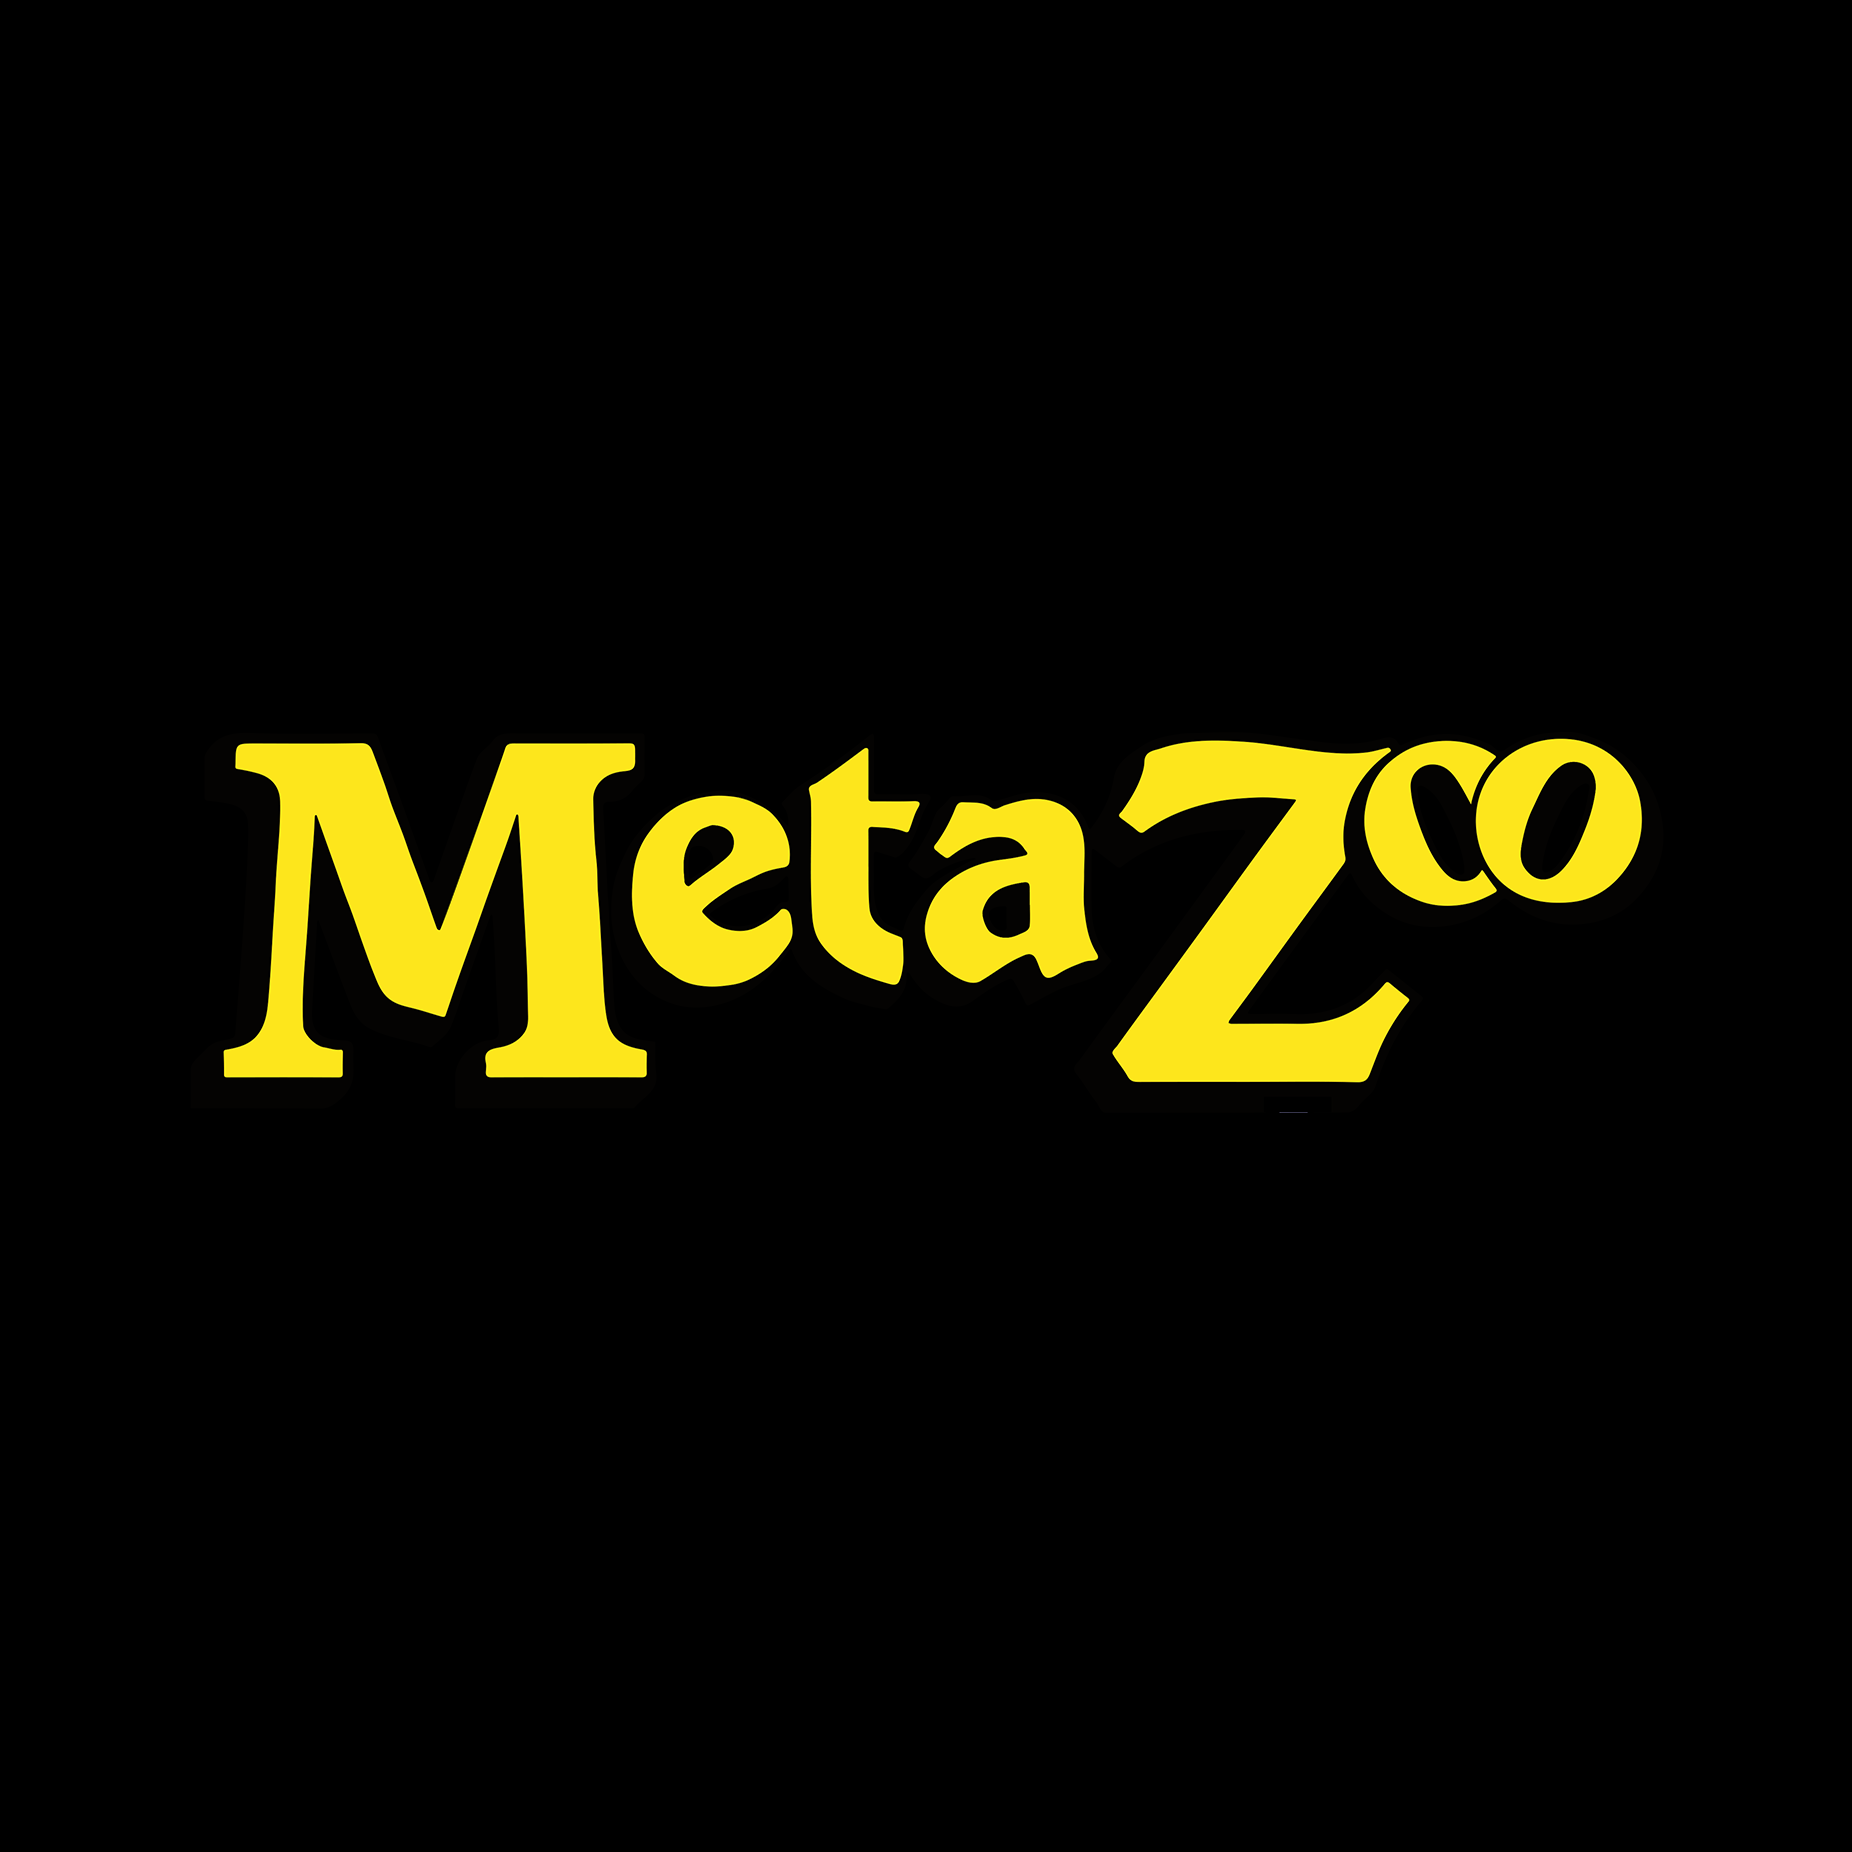 MetaZoo Logo UGS